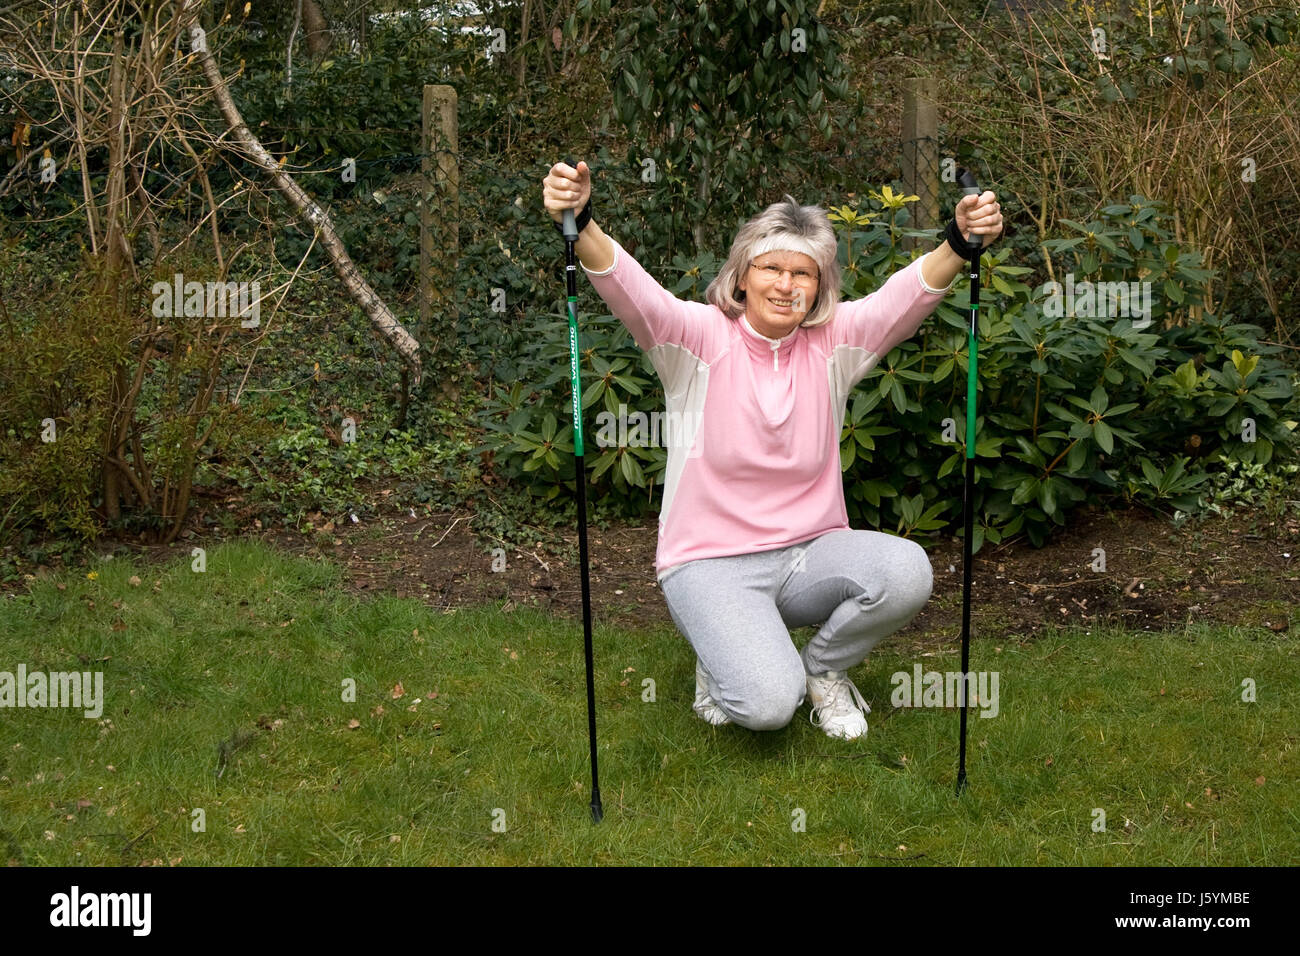 Donna seniort attiva nordic walking annuitant donna ridere risate ridere twit Foto Stock